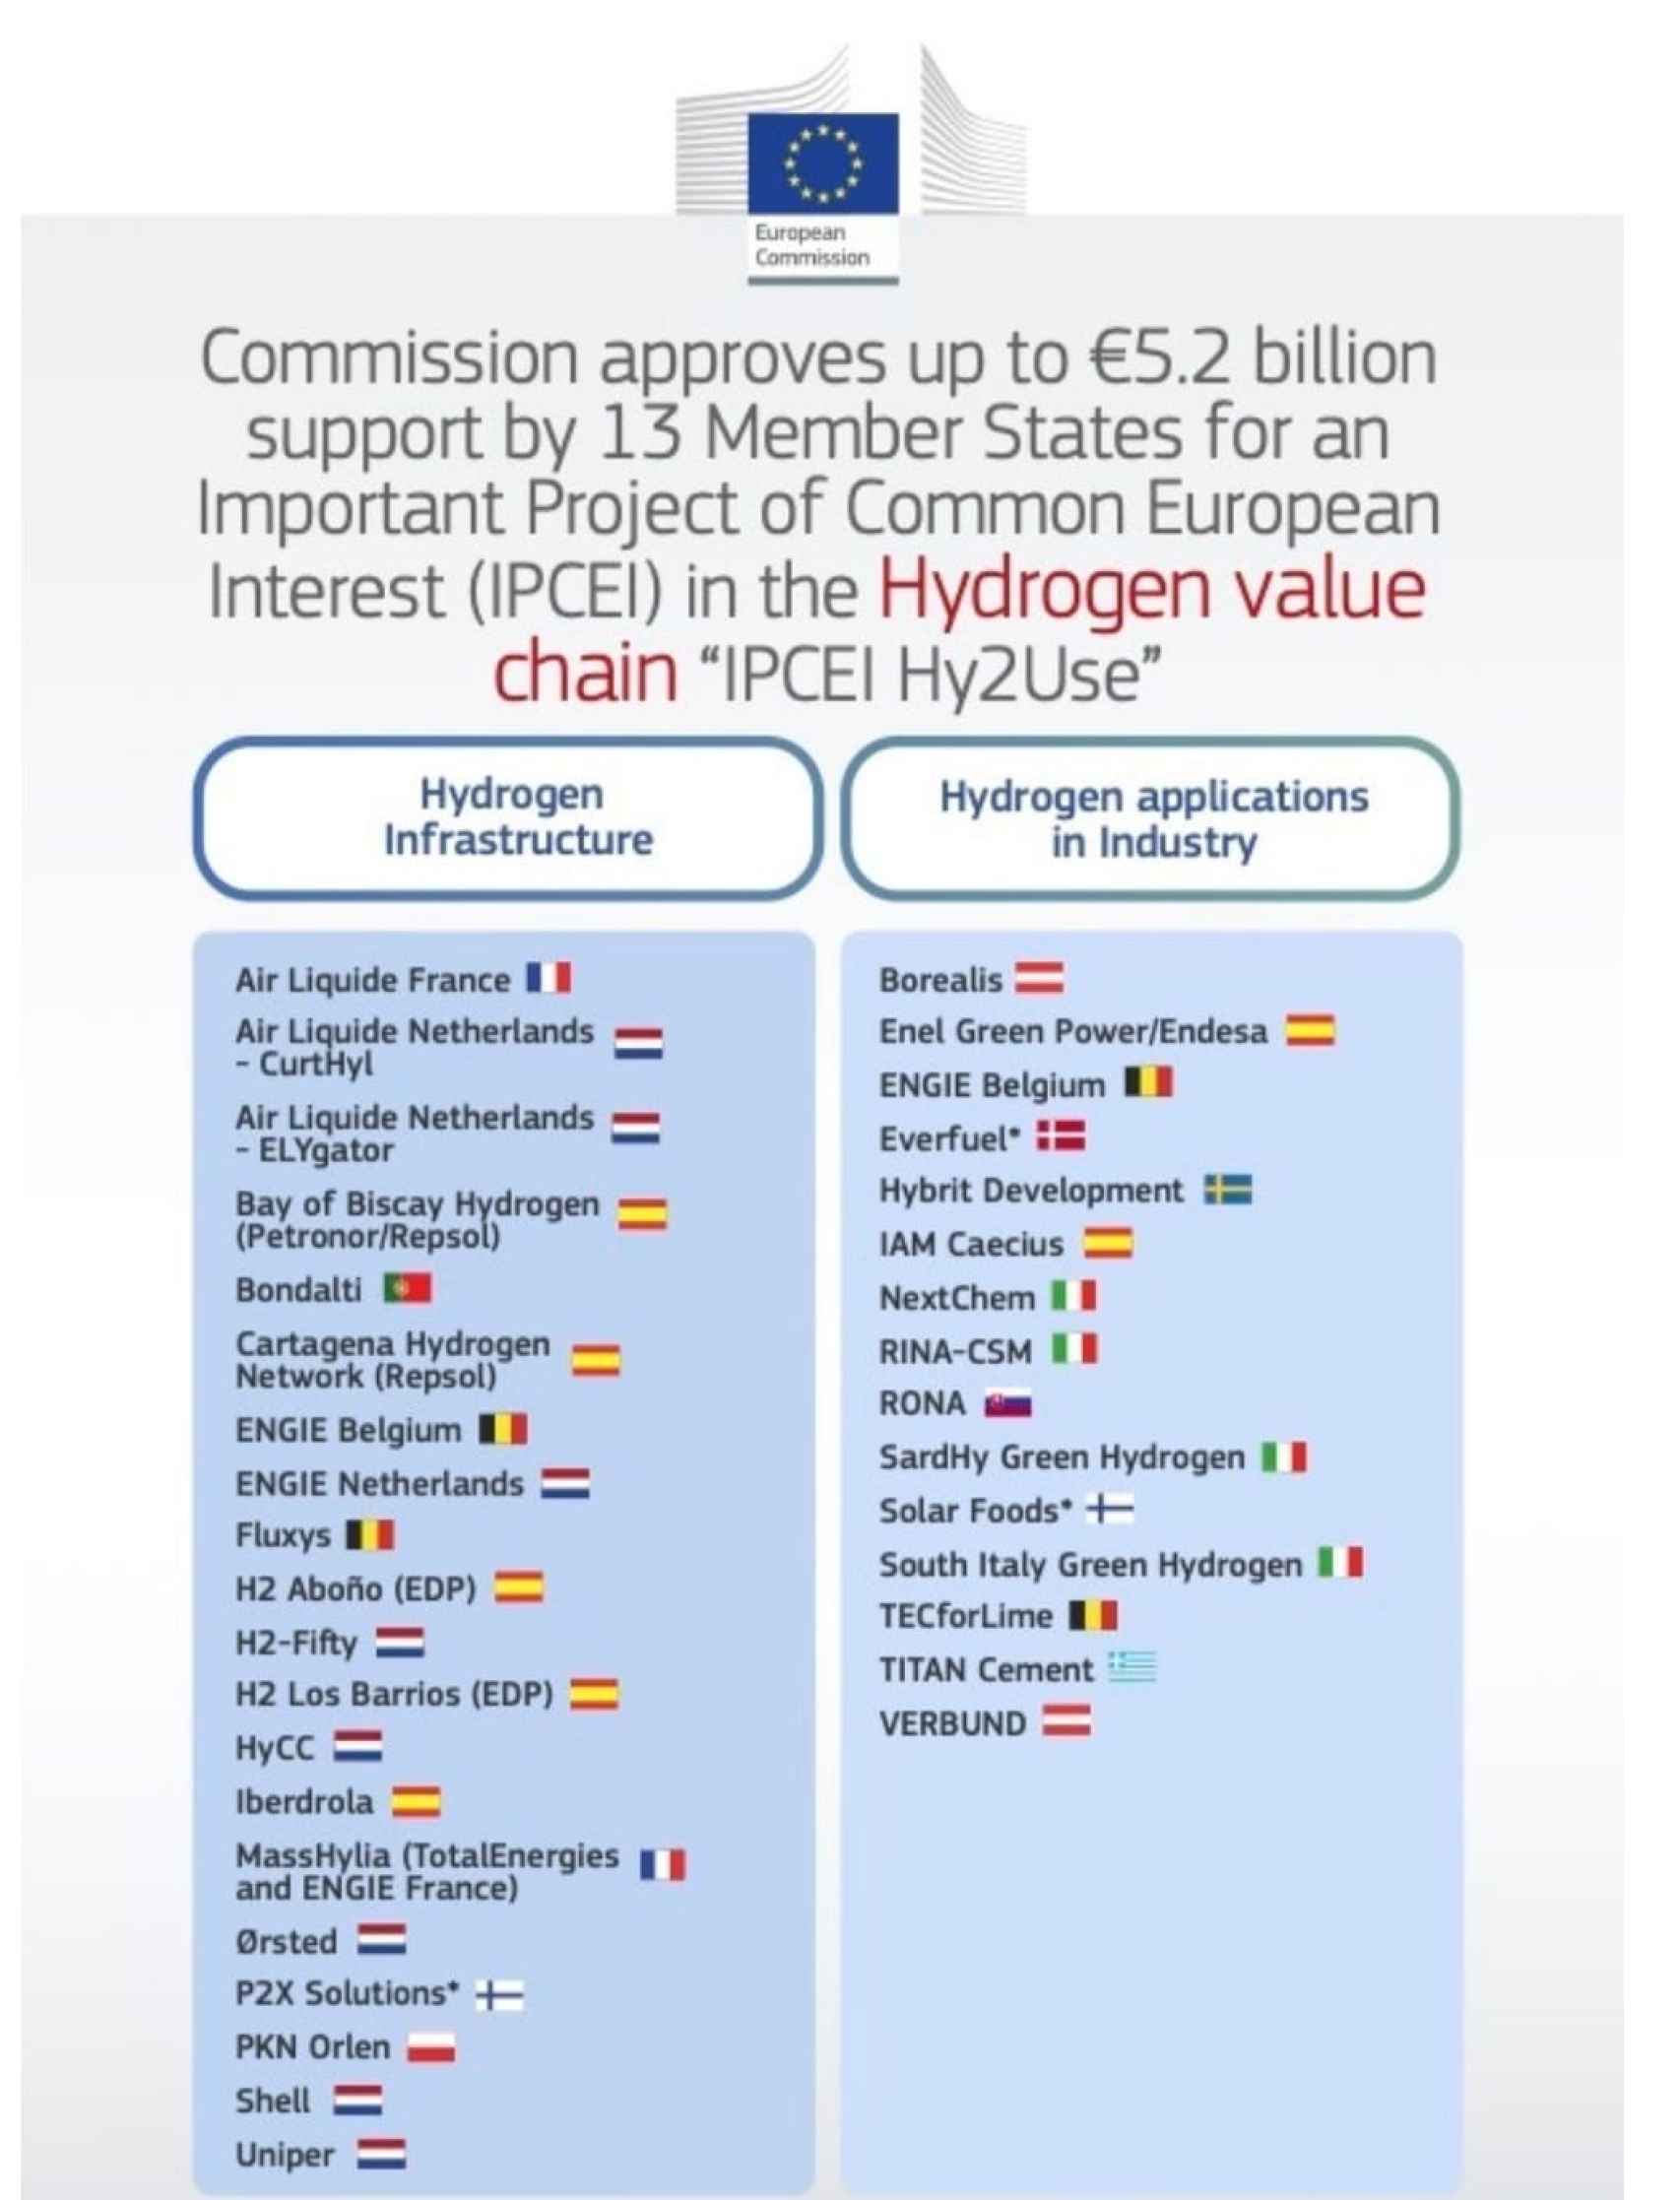 Proyectos de hidrógeno aprobados por la UE